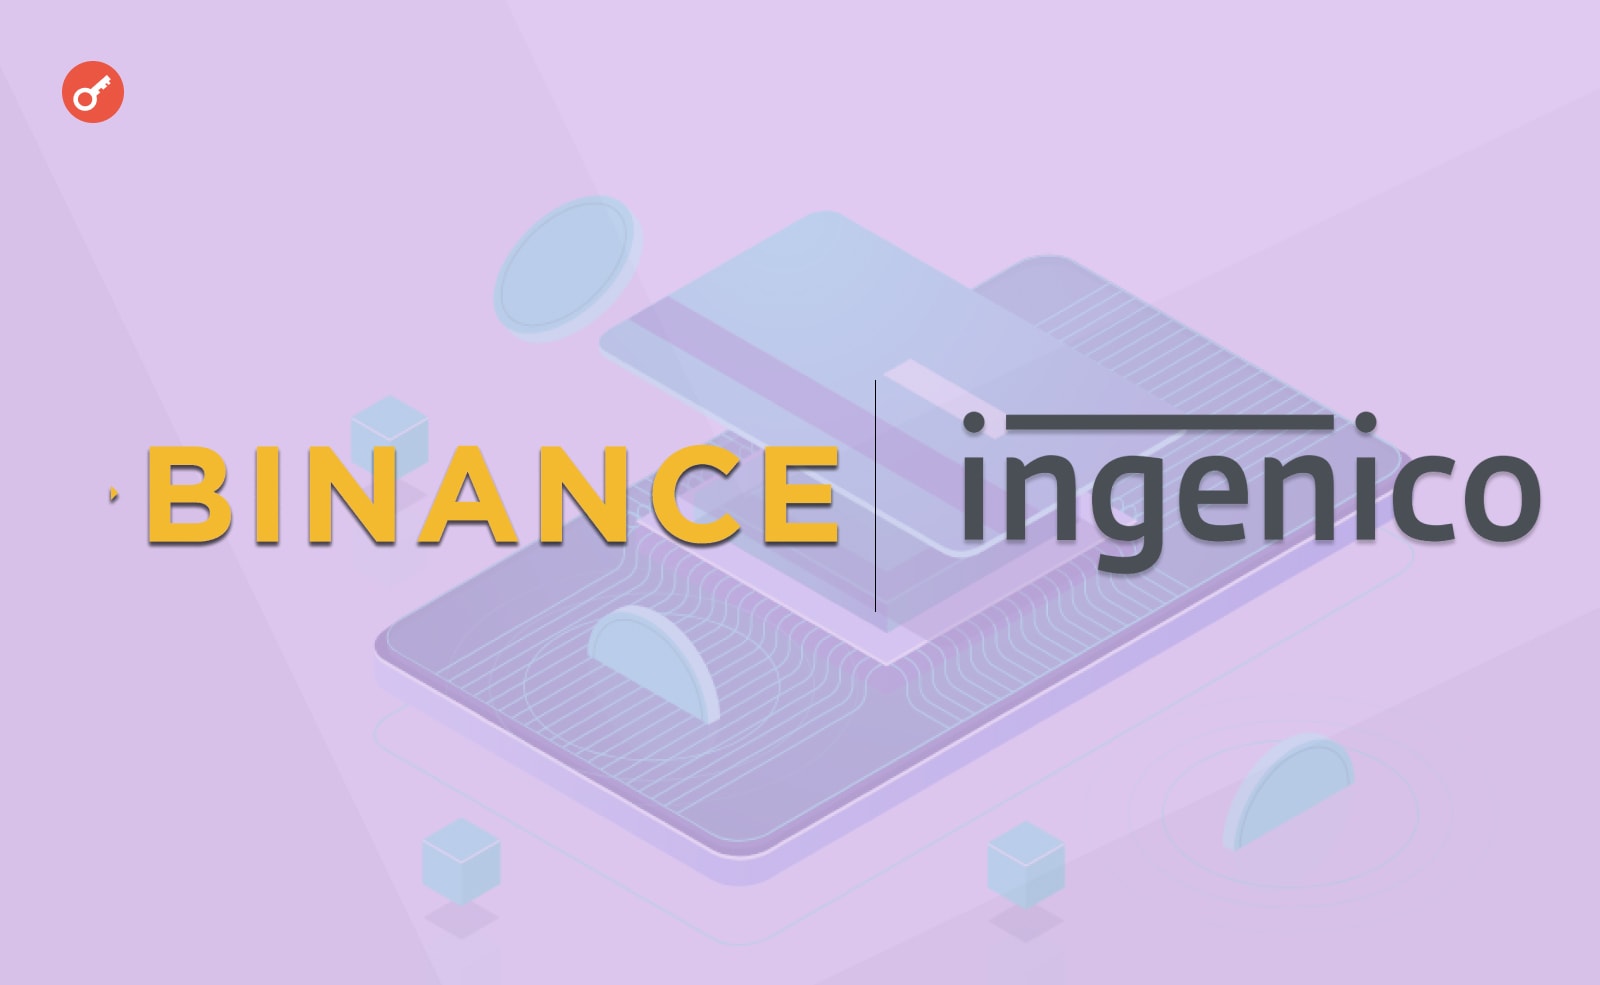 Binance стали партнером компании Ingenico. Это международный провайдер, который обслуживает платежные терминалы.